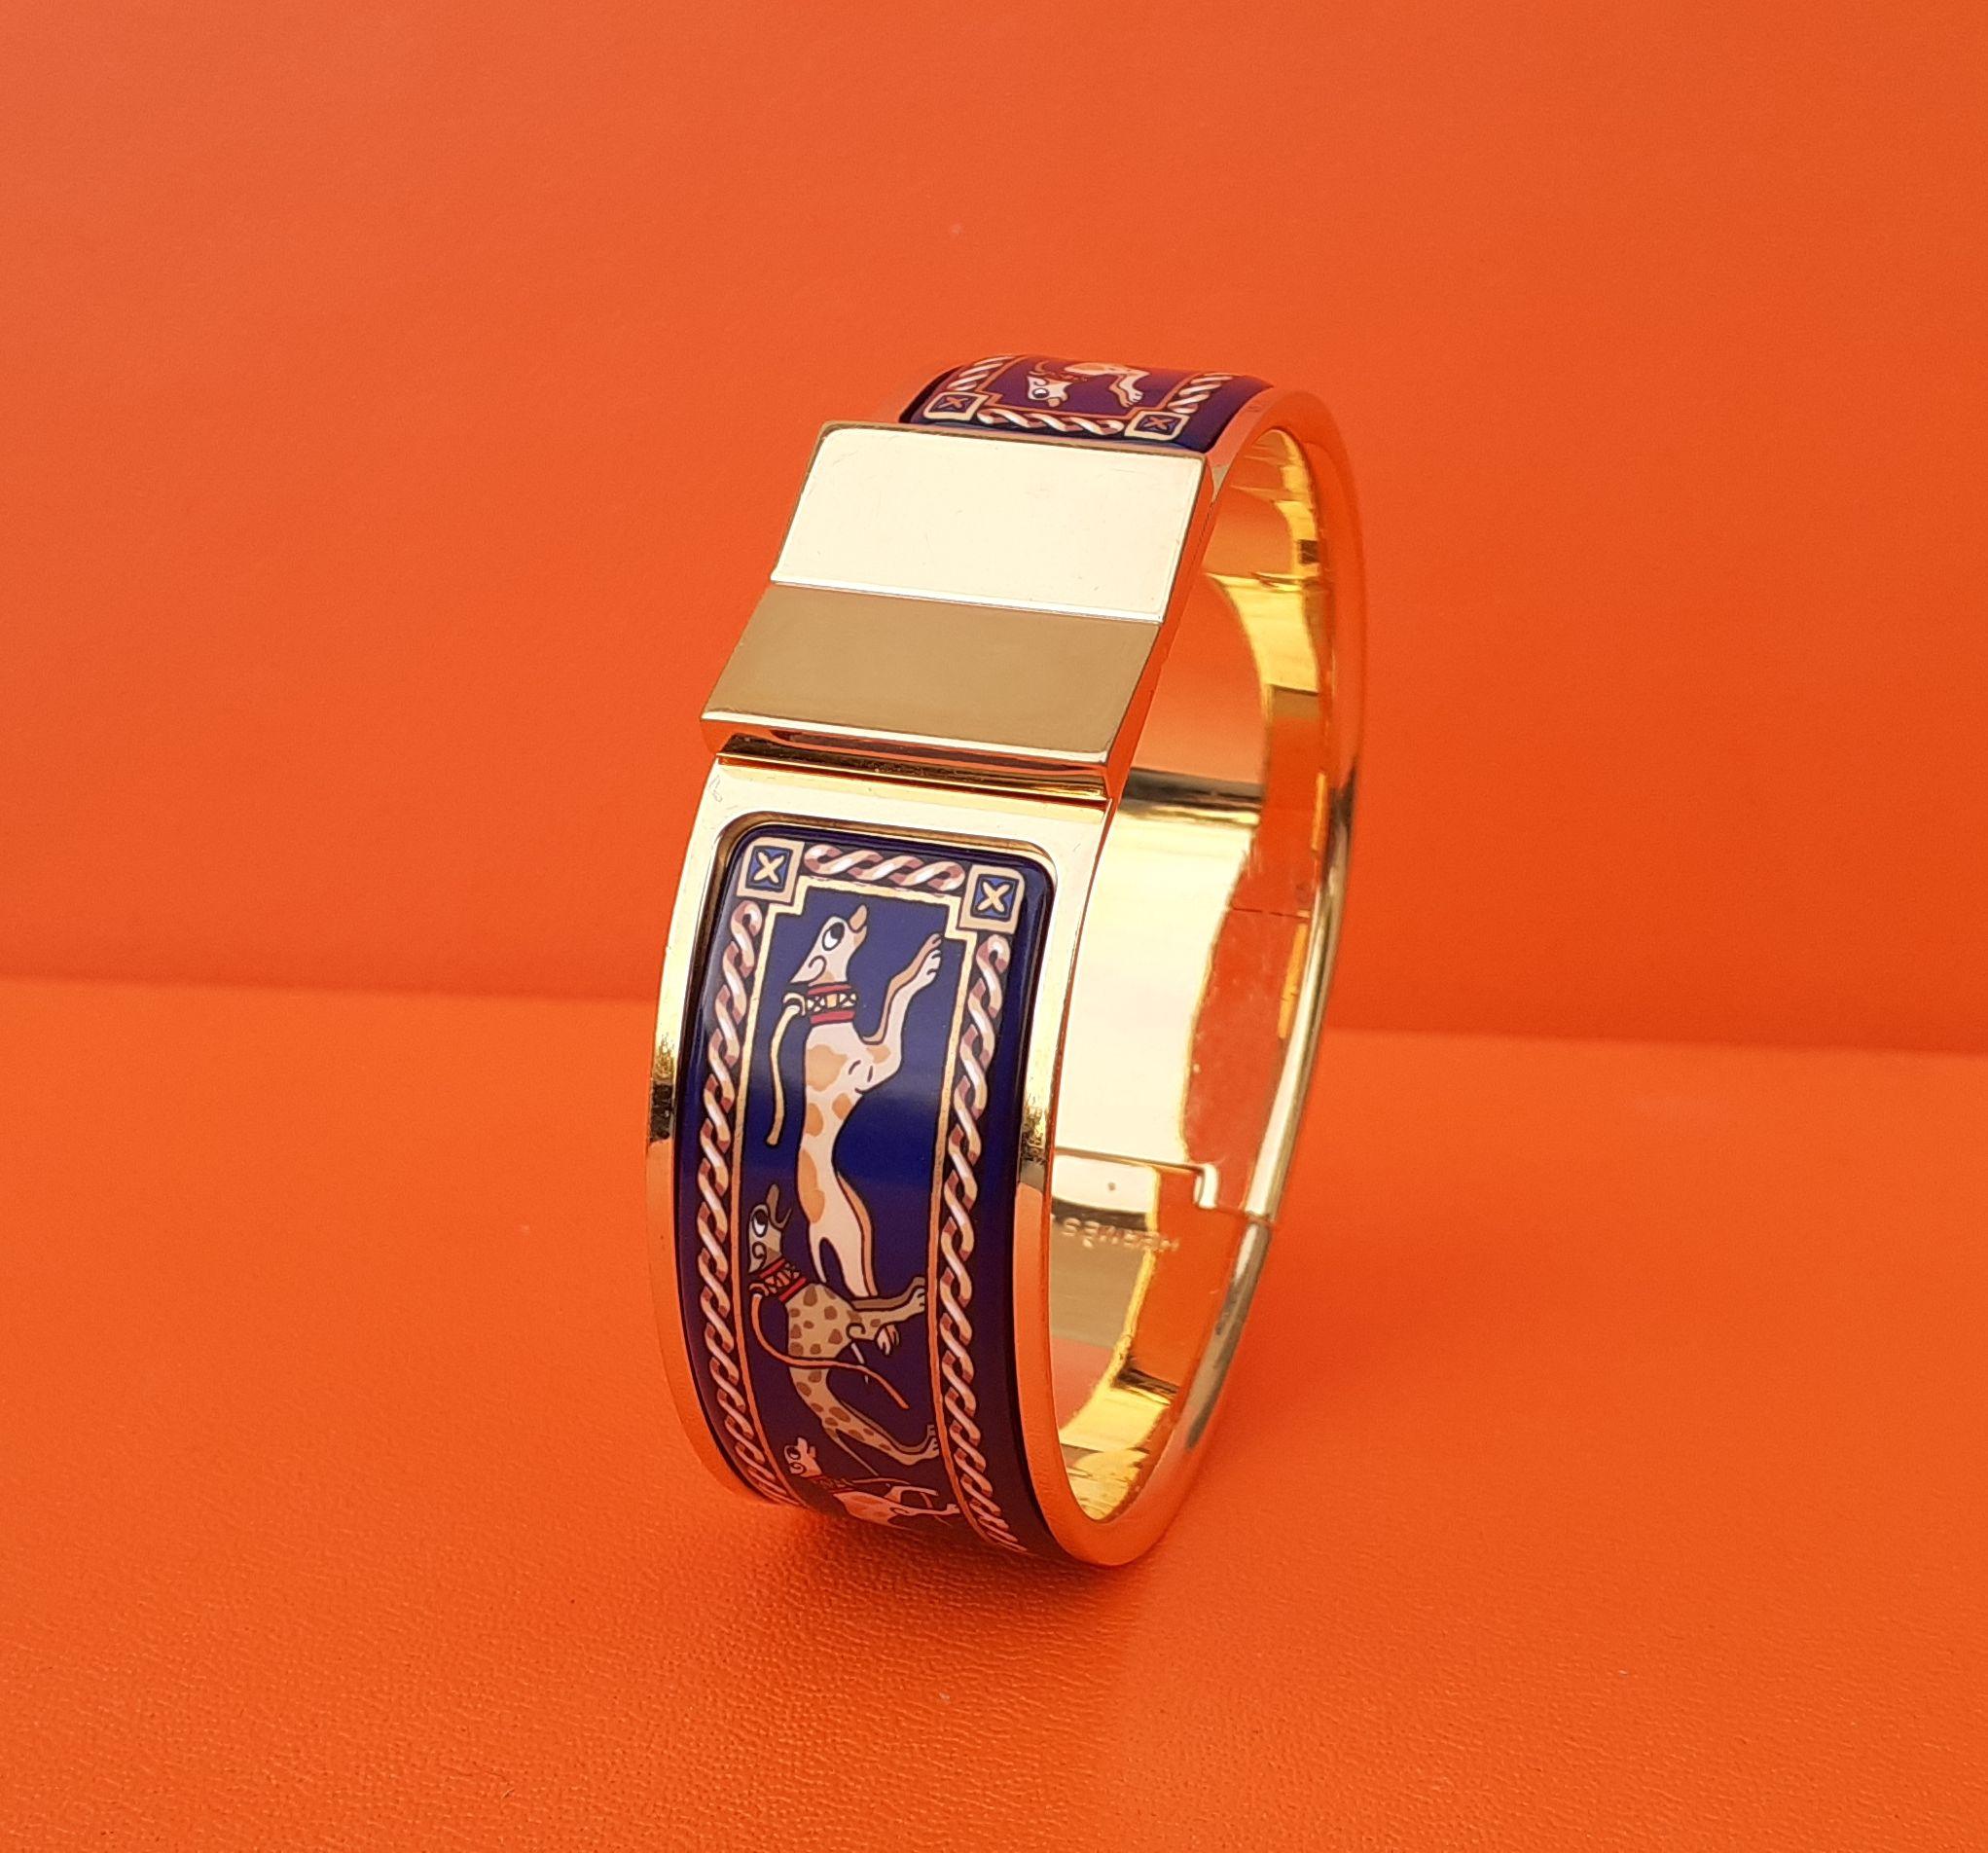 Rara und schöne authentische Hermès-Armband

Drucken: Windhunde (Lévriers)

